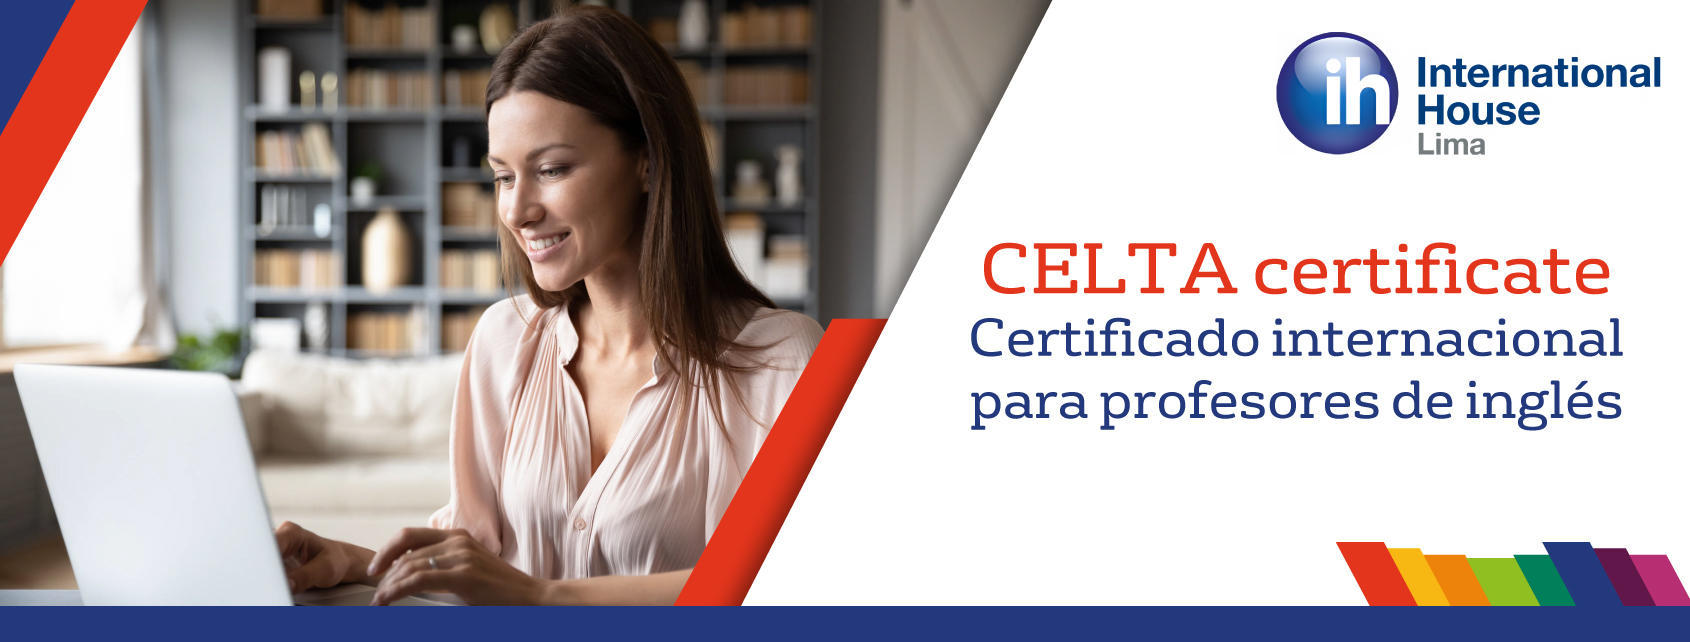 CELTA certificate El certificado para profesores de inglés internacional